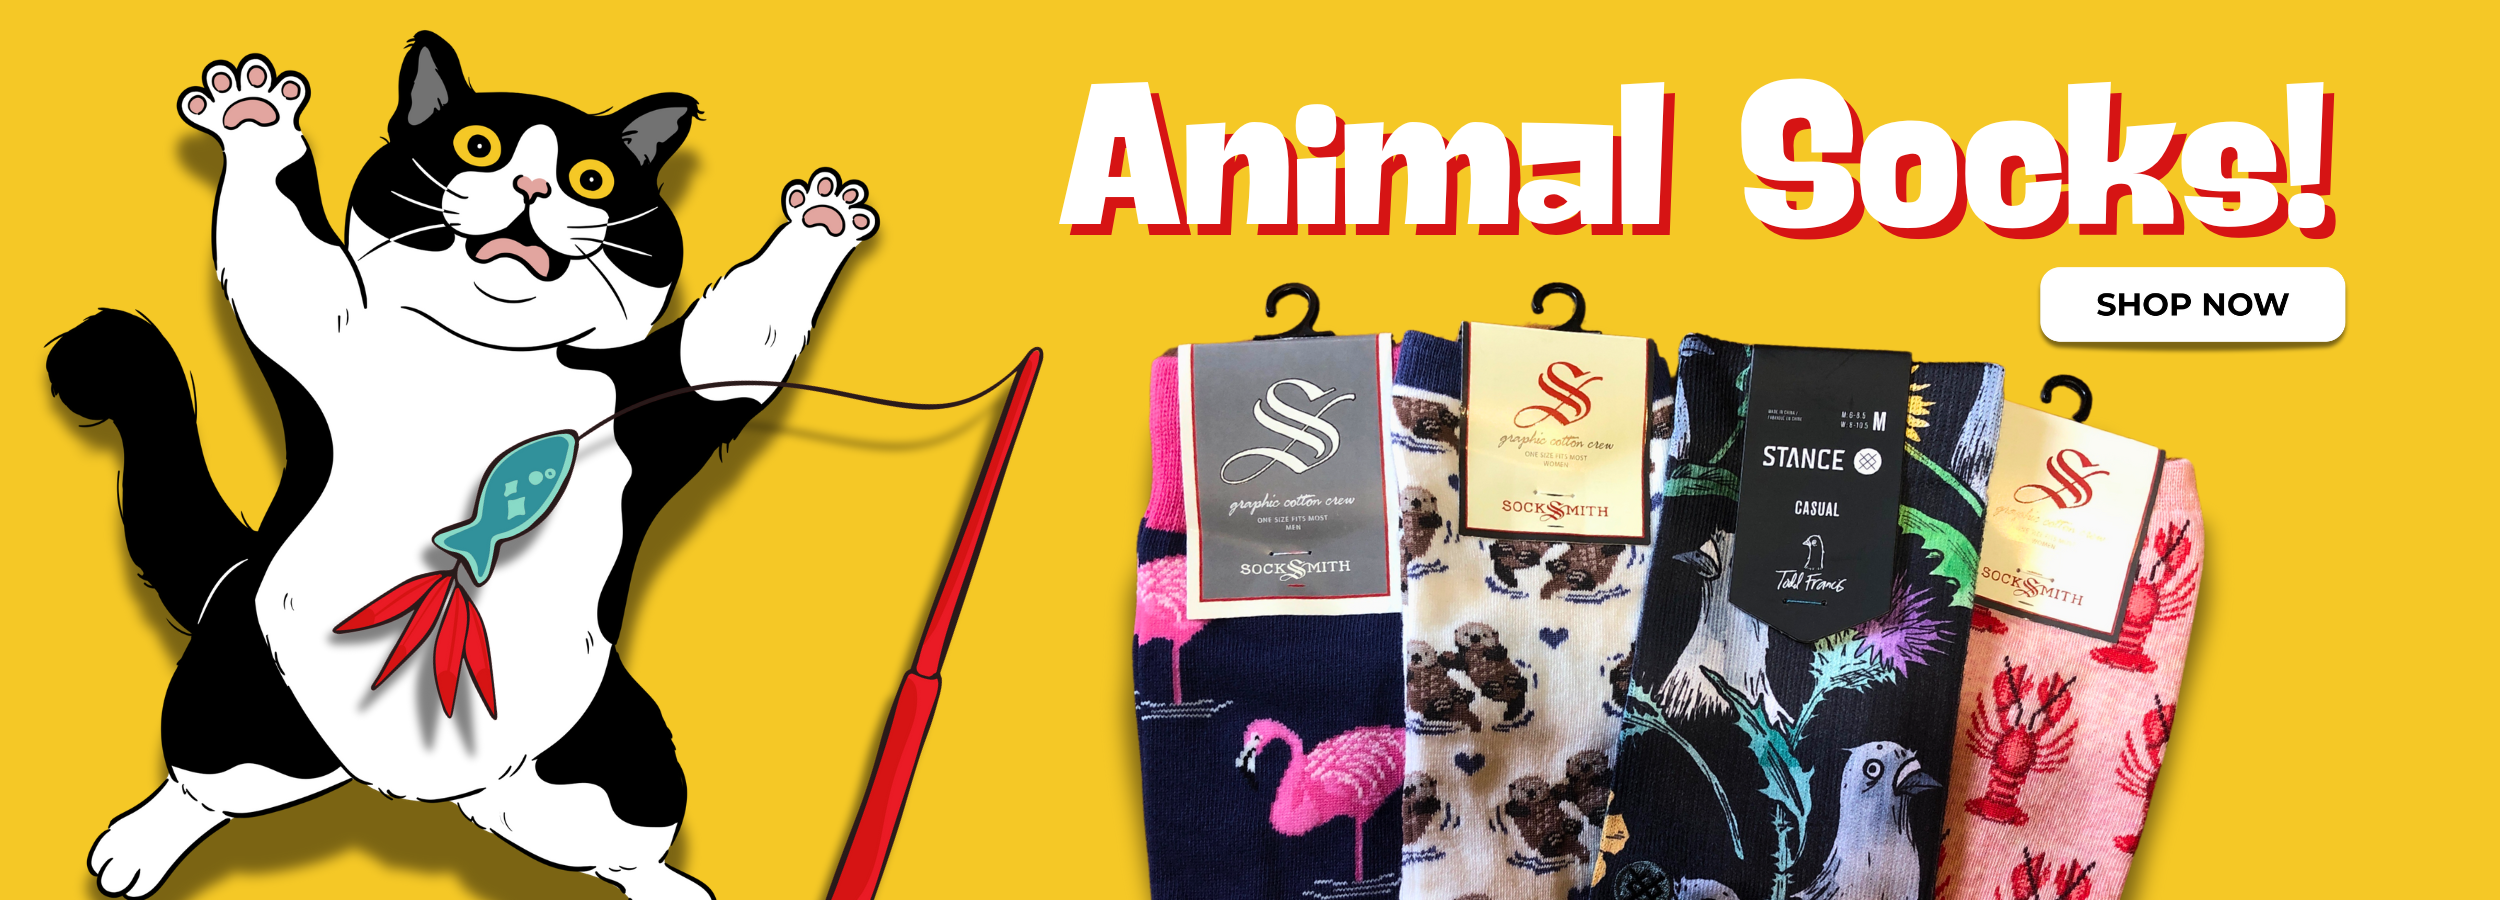 Animal socks dt